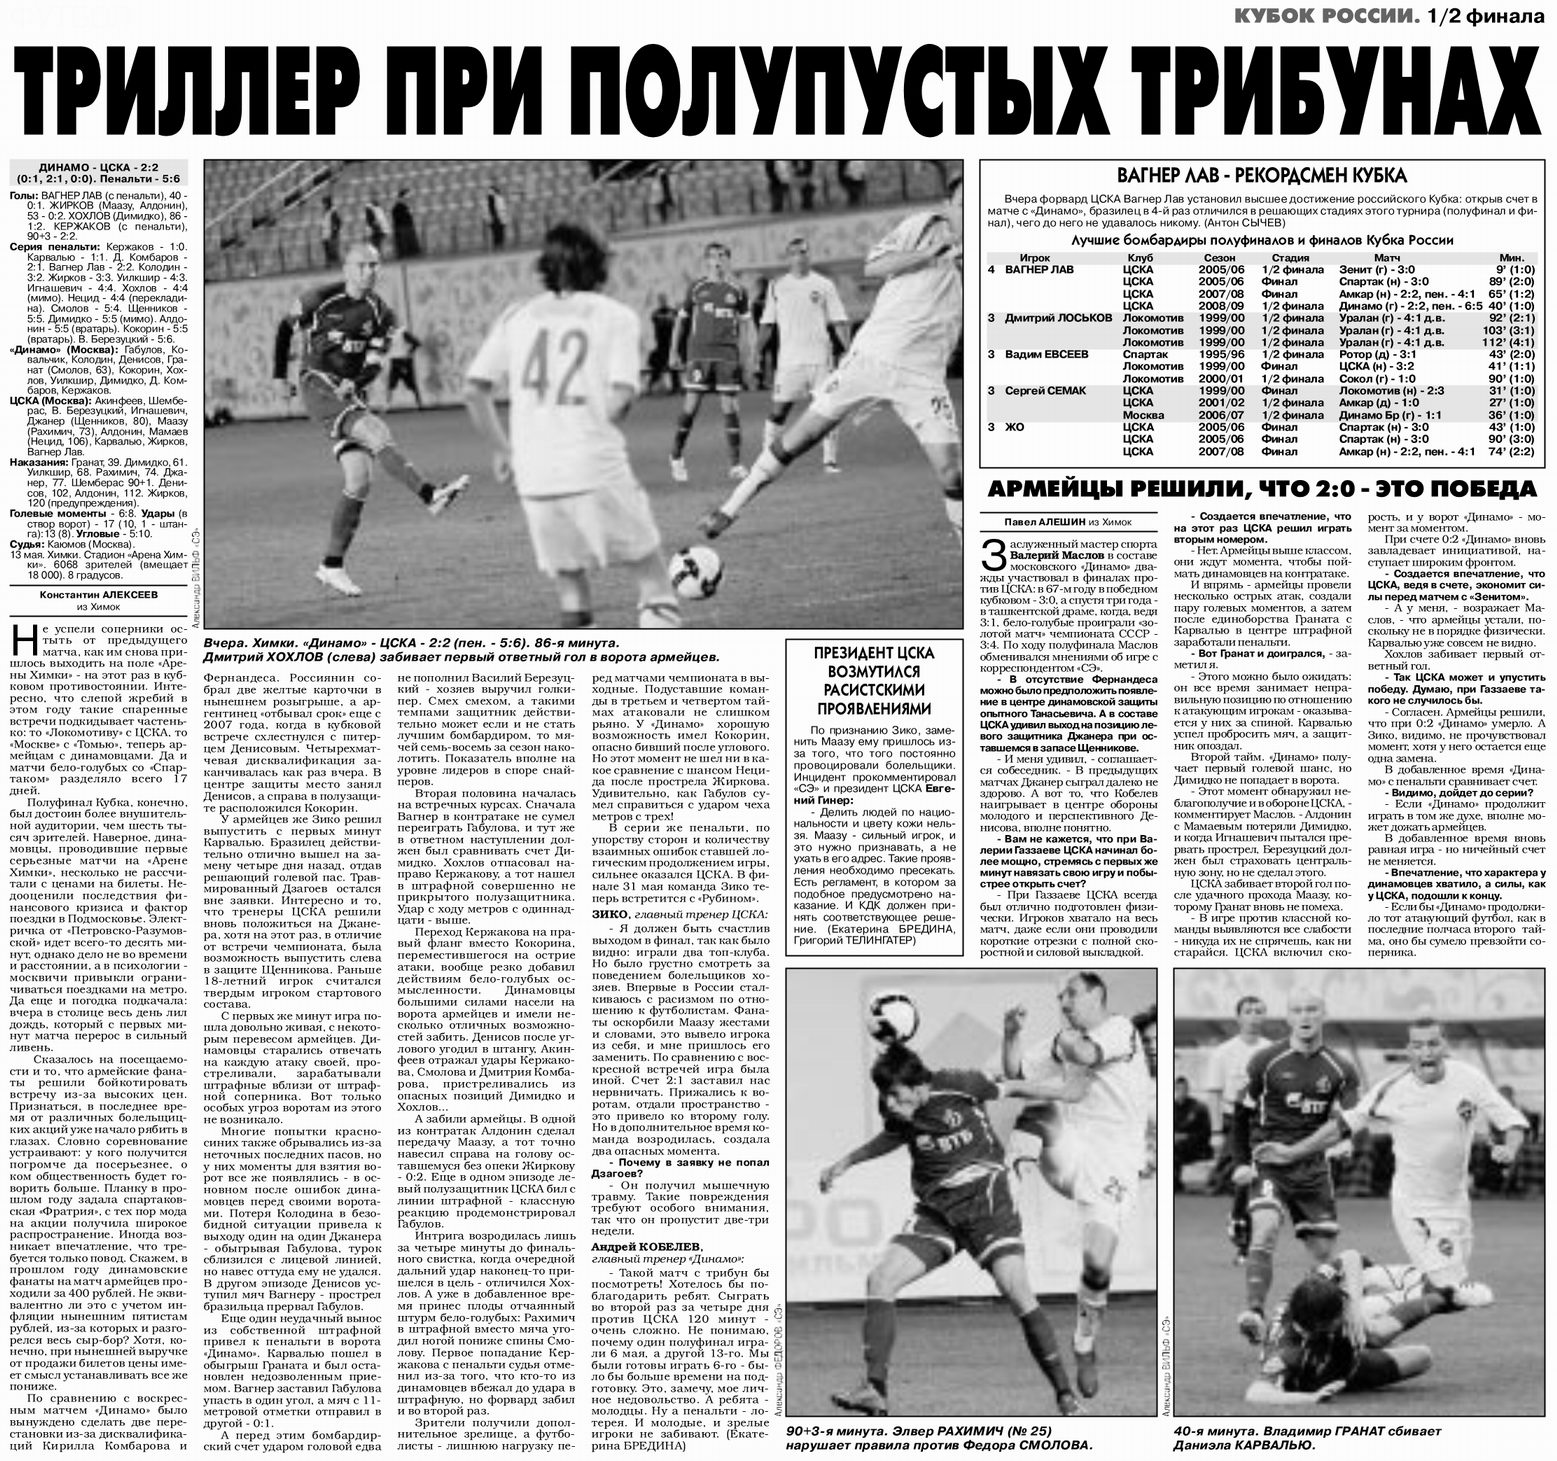 2009-05-13.DinamoM-CSKA